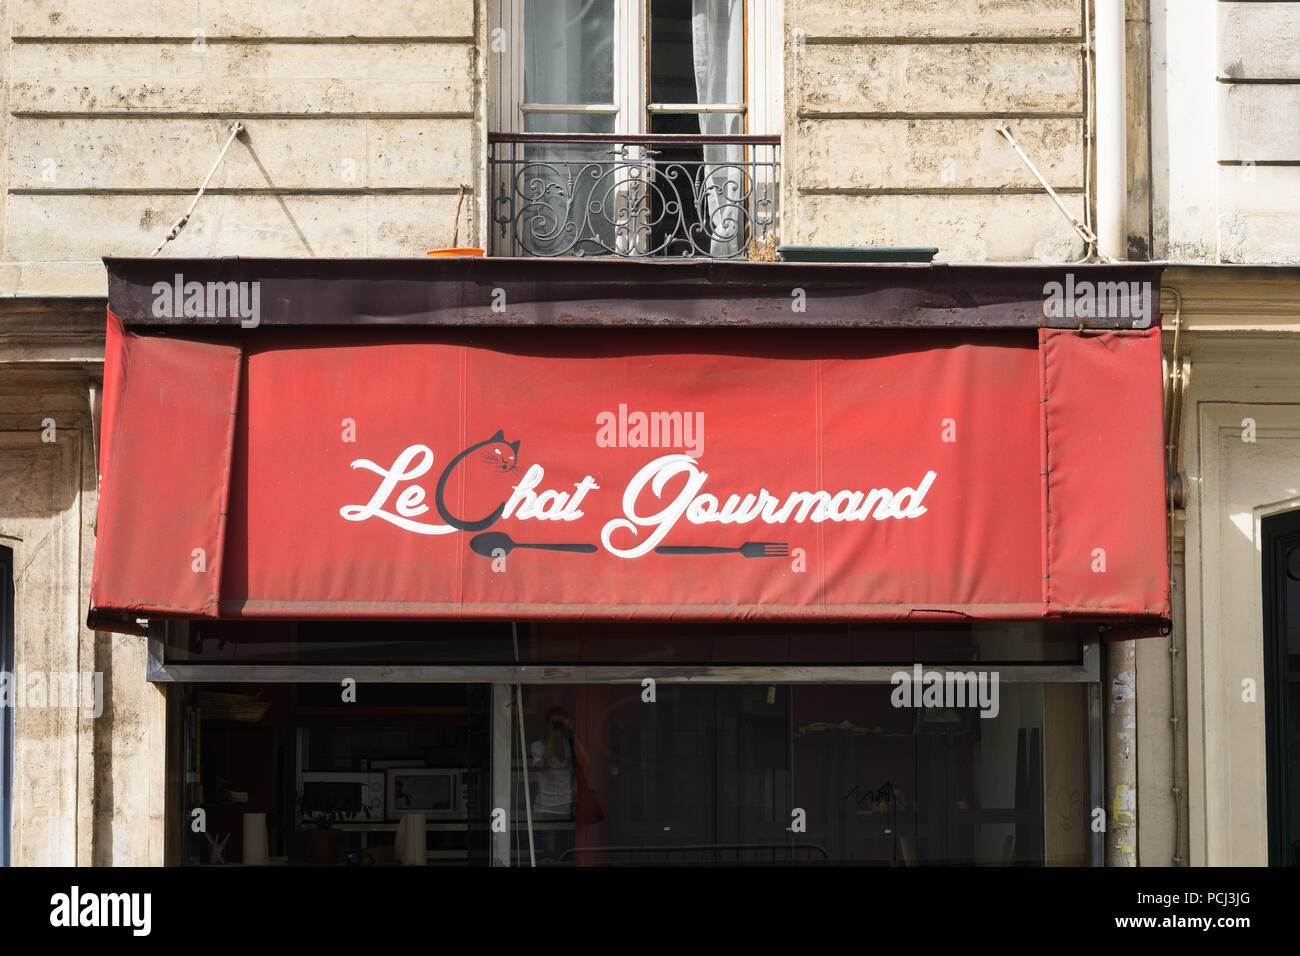 11ème arrondissement de Paris - auvent d'un restaurant parisien Le Chat Gourmand dans le 11ème arrondissement. La France, l'Europe. Banque D'Images